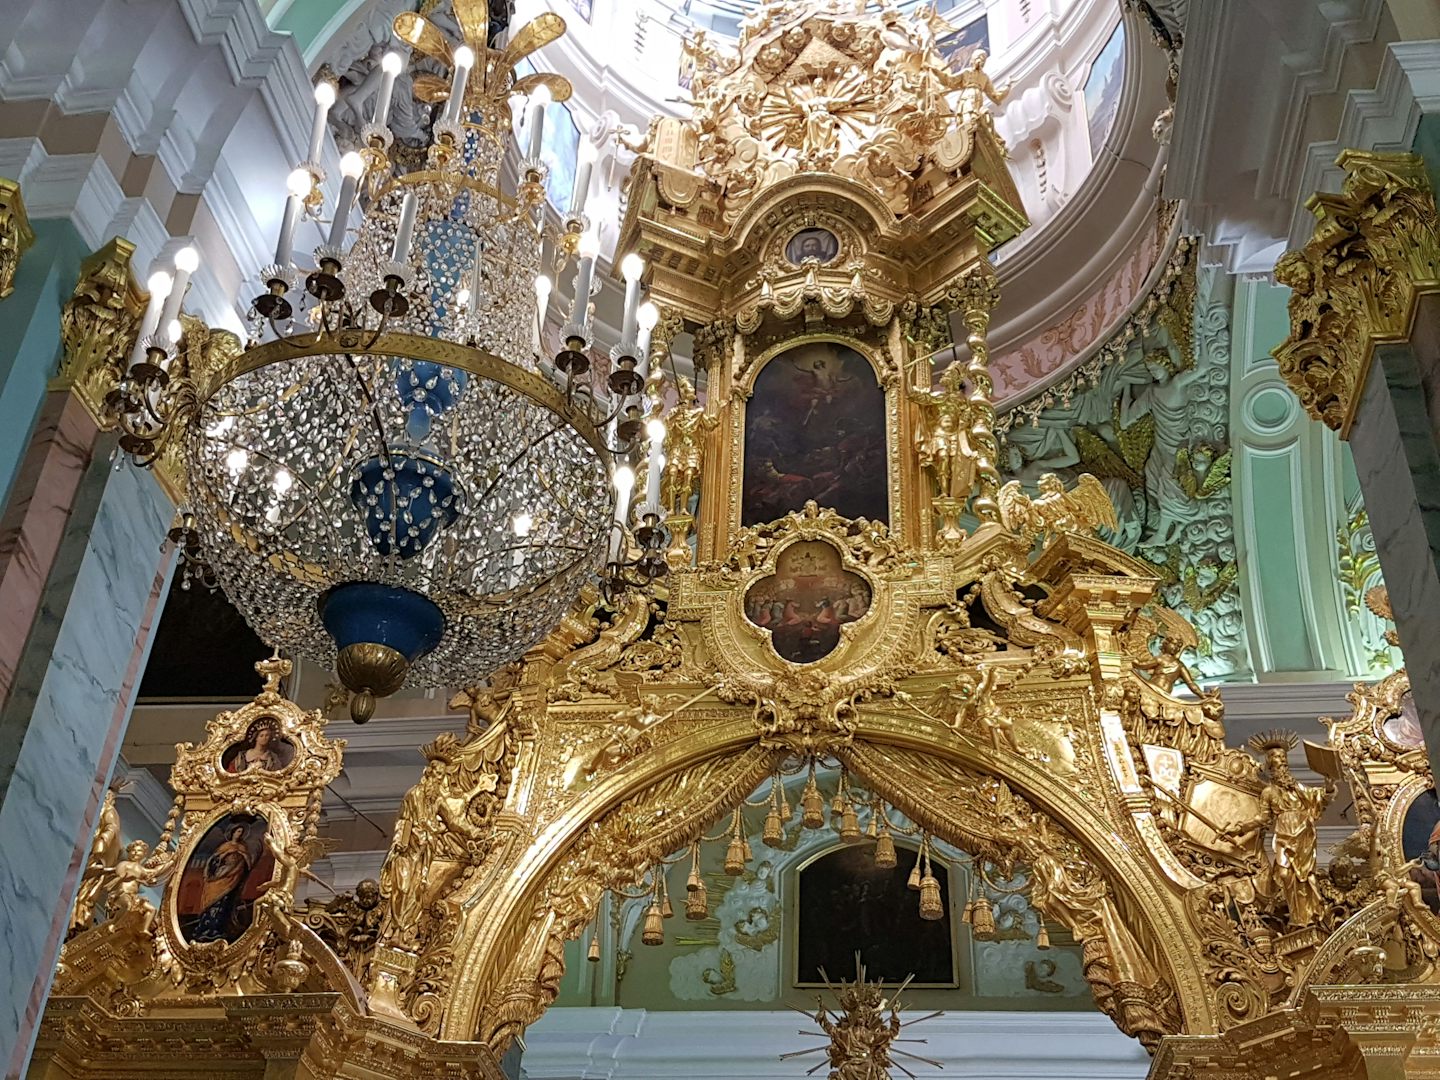 The Hermitage in St. Petersburg.